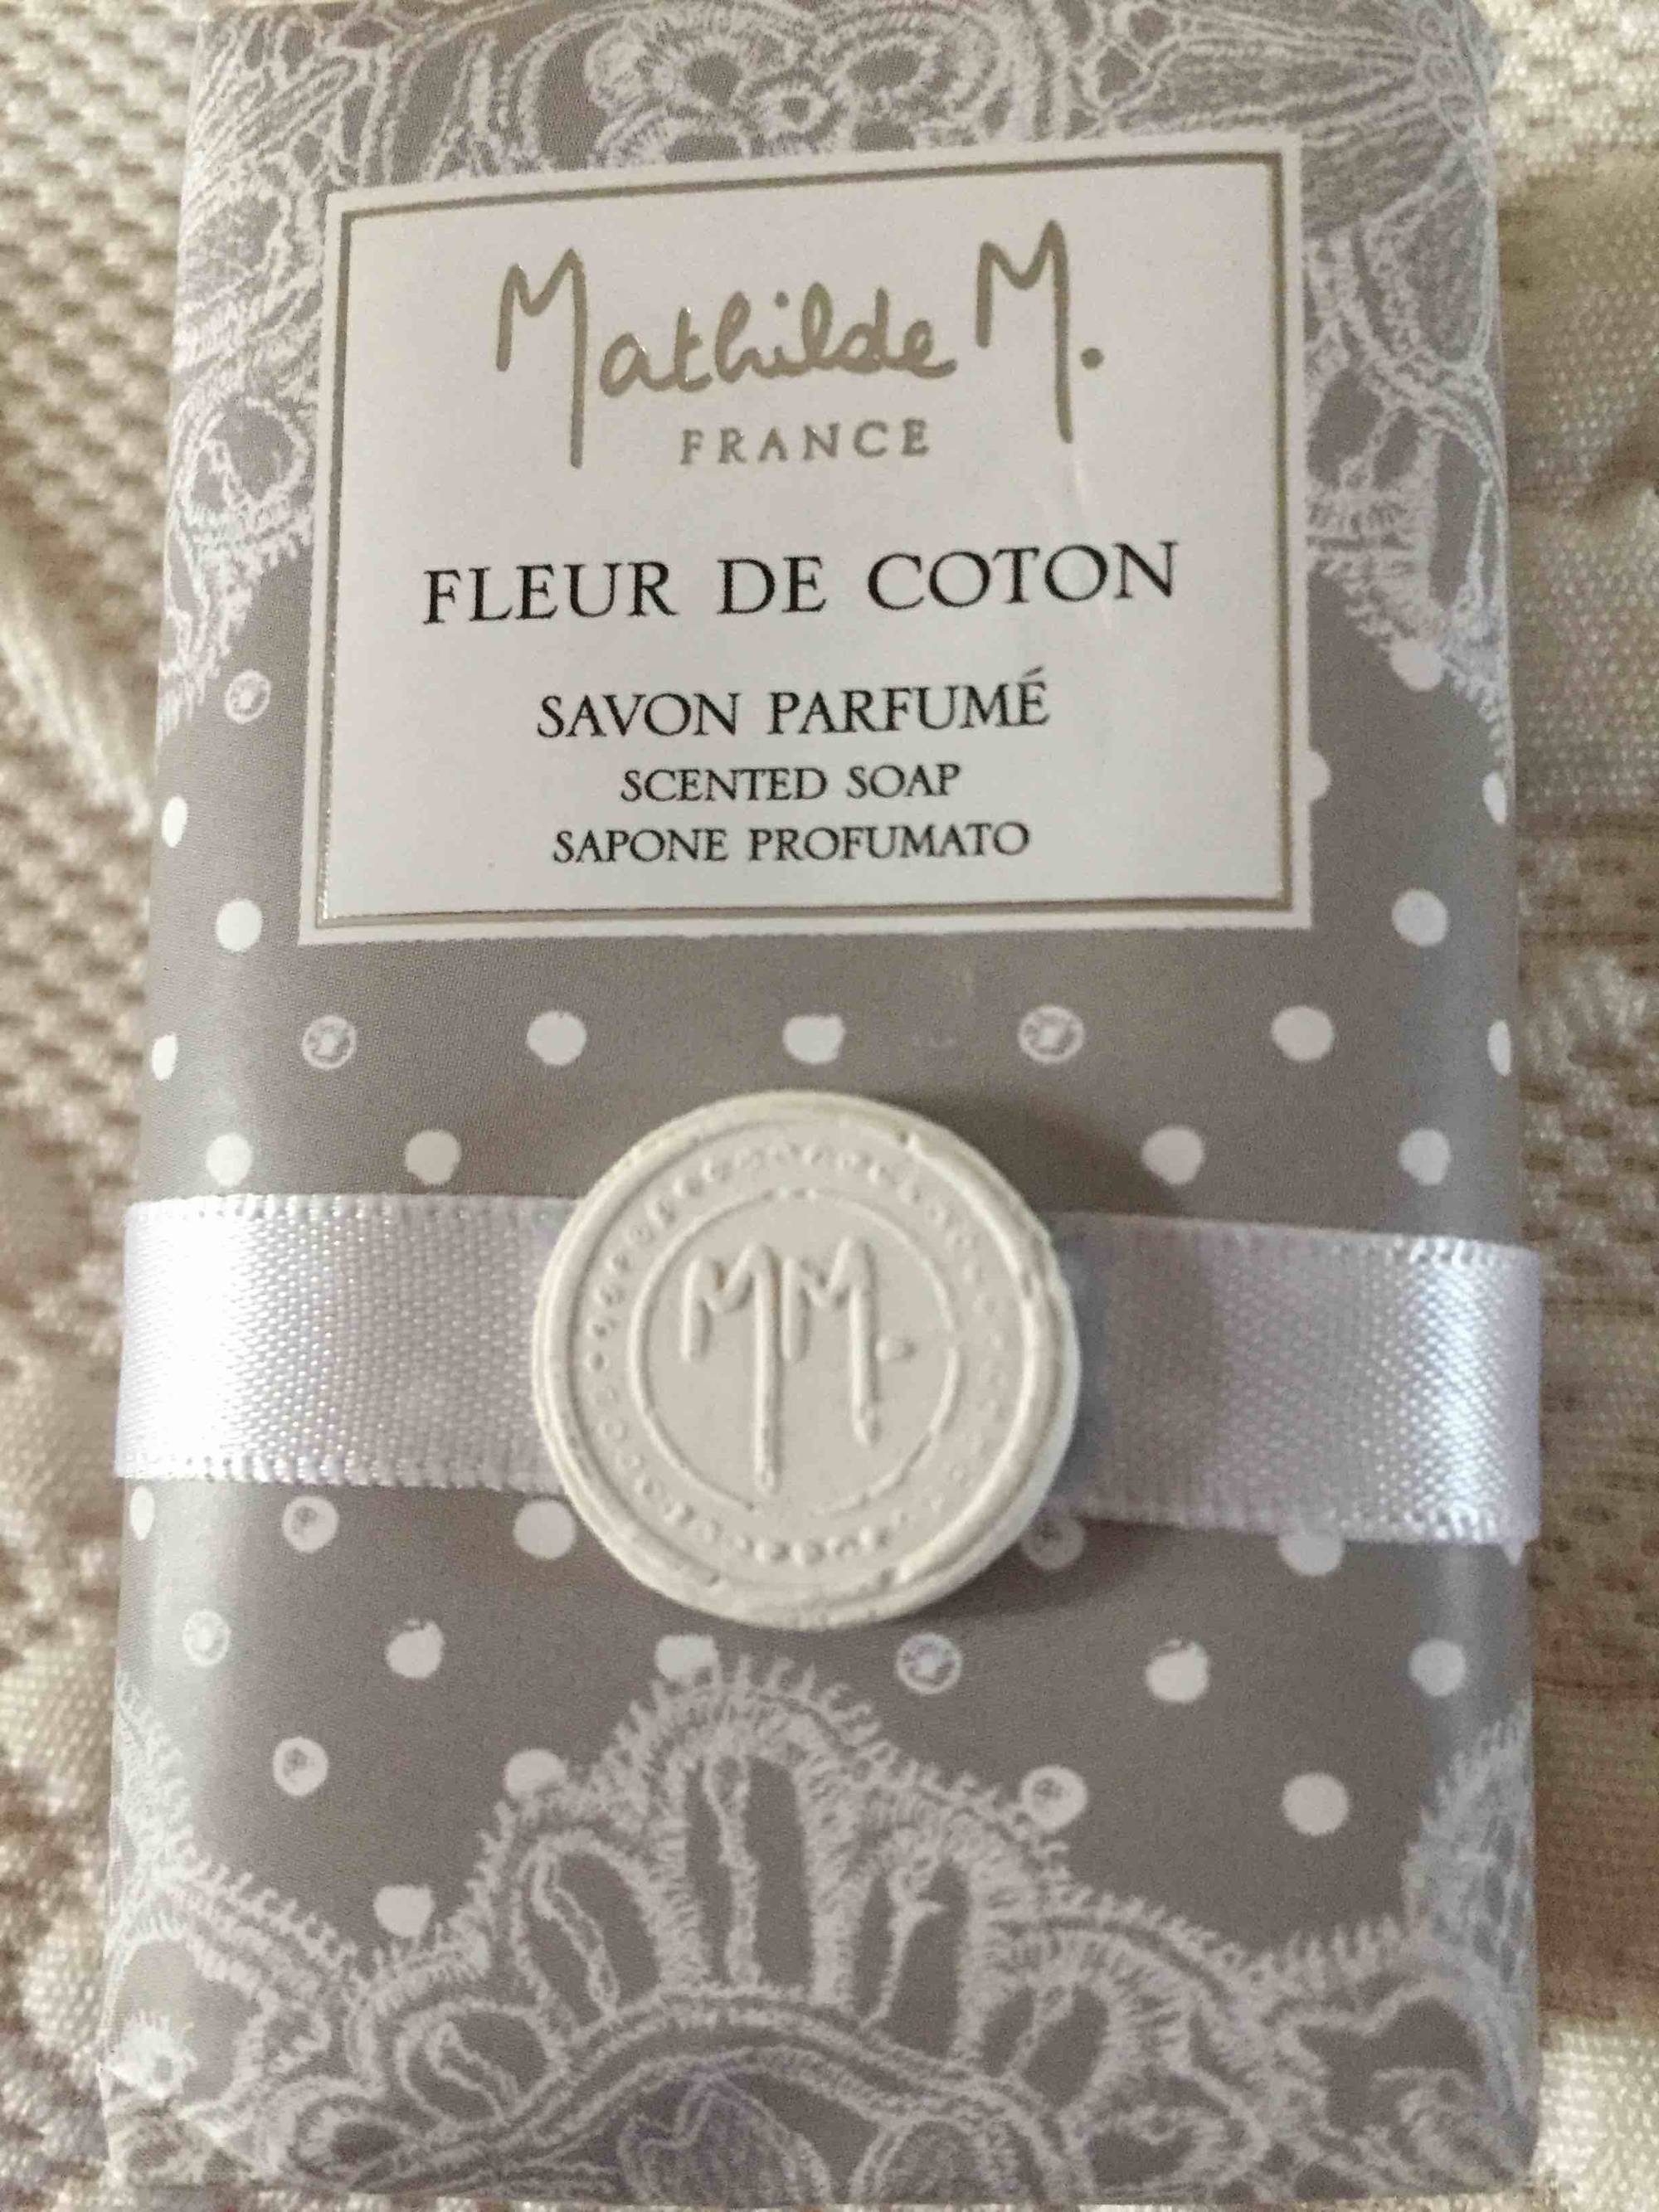 MATHILDE M. - Fleur de coton - Savon parfumé